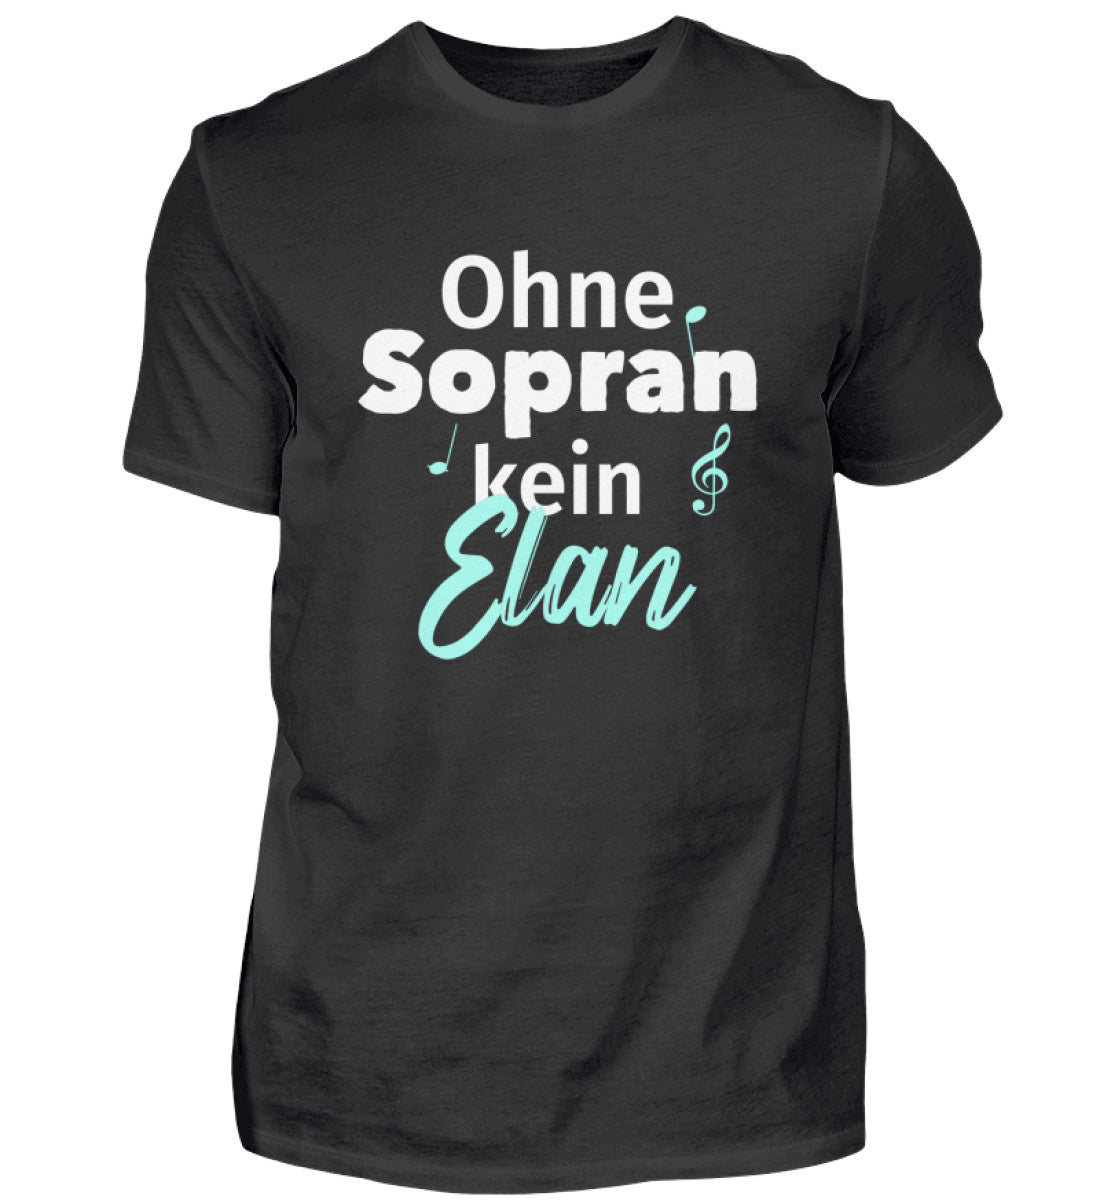 Chor Sopran T-Shirt